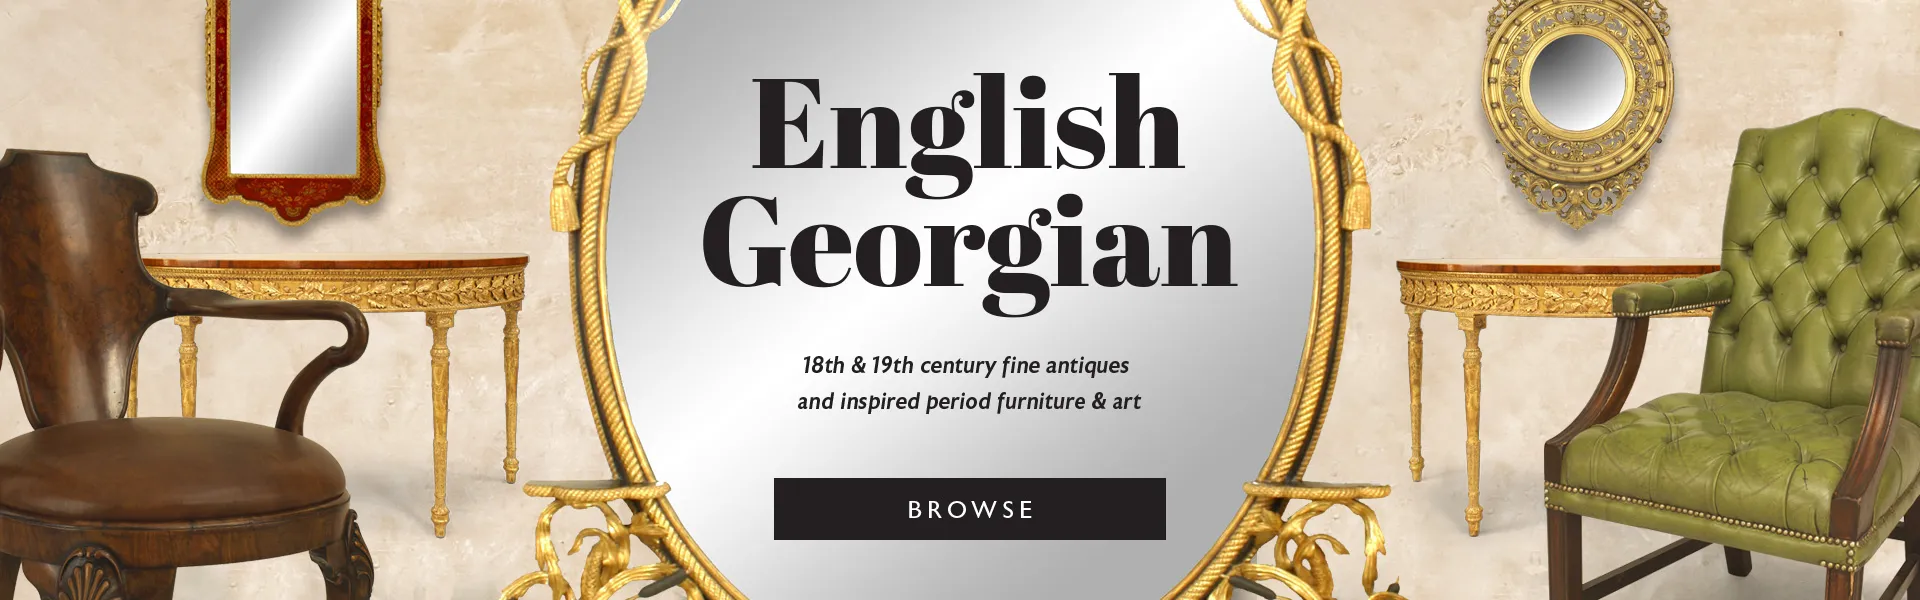 English Georgian